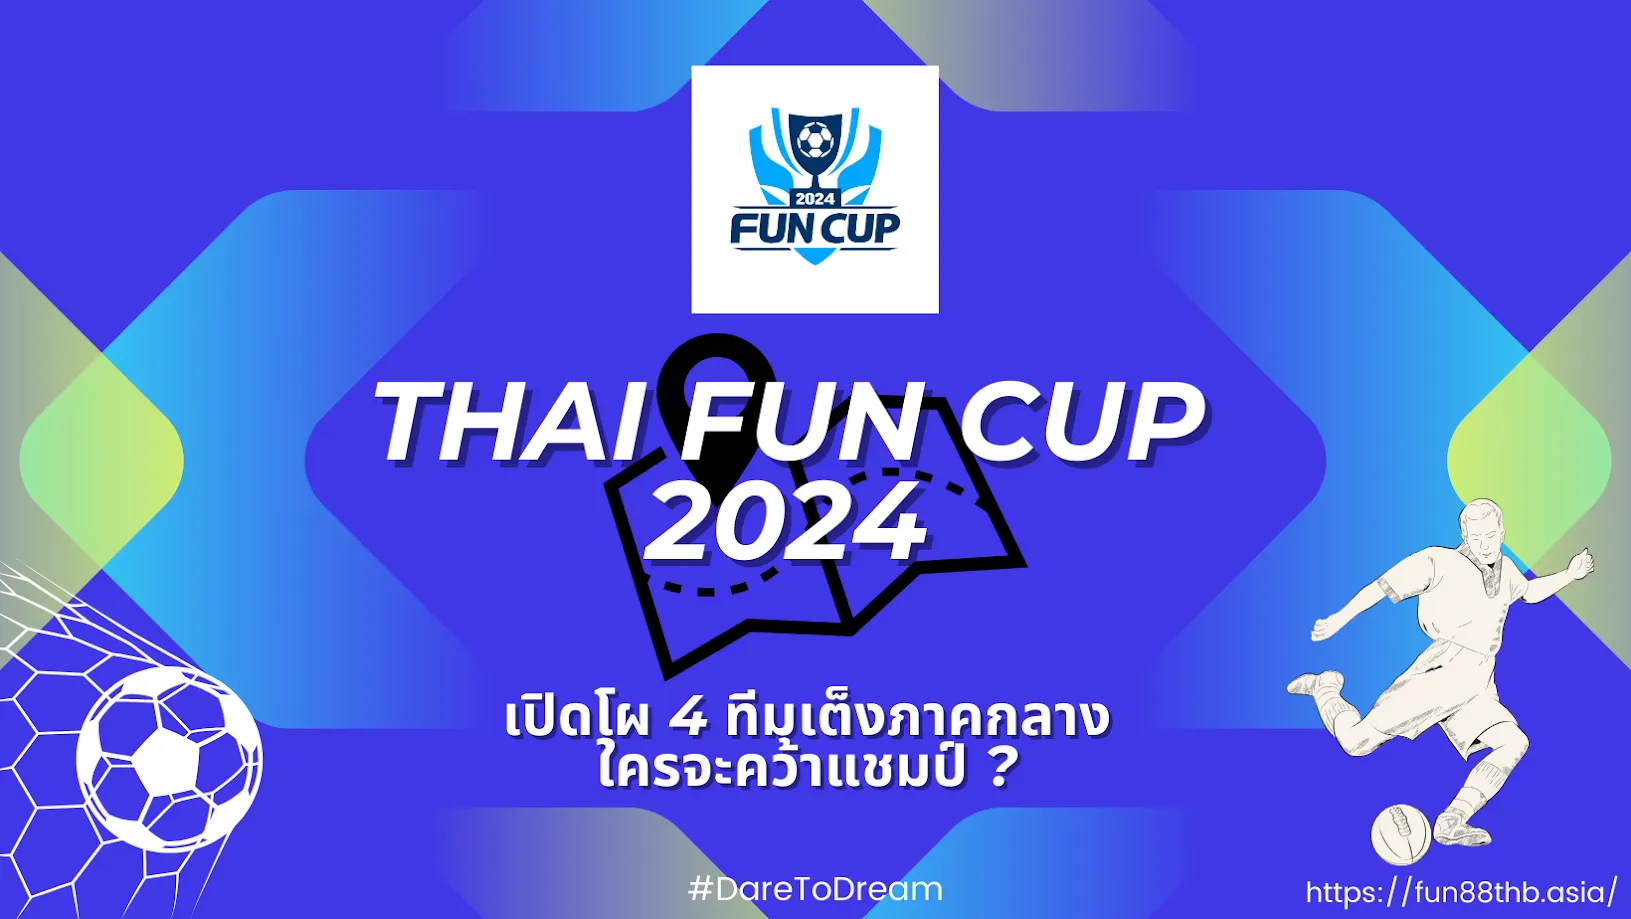 THAI FUN CUP 2024 | เปิดโผ 4 ทีมเต็งภาคกลาง ใครจะคว้าแชมป์?